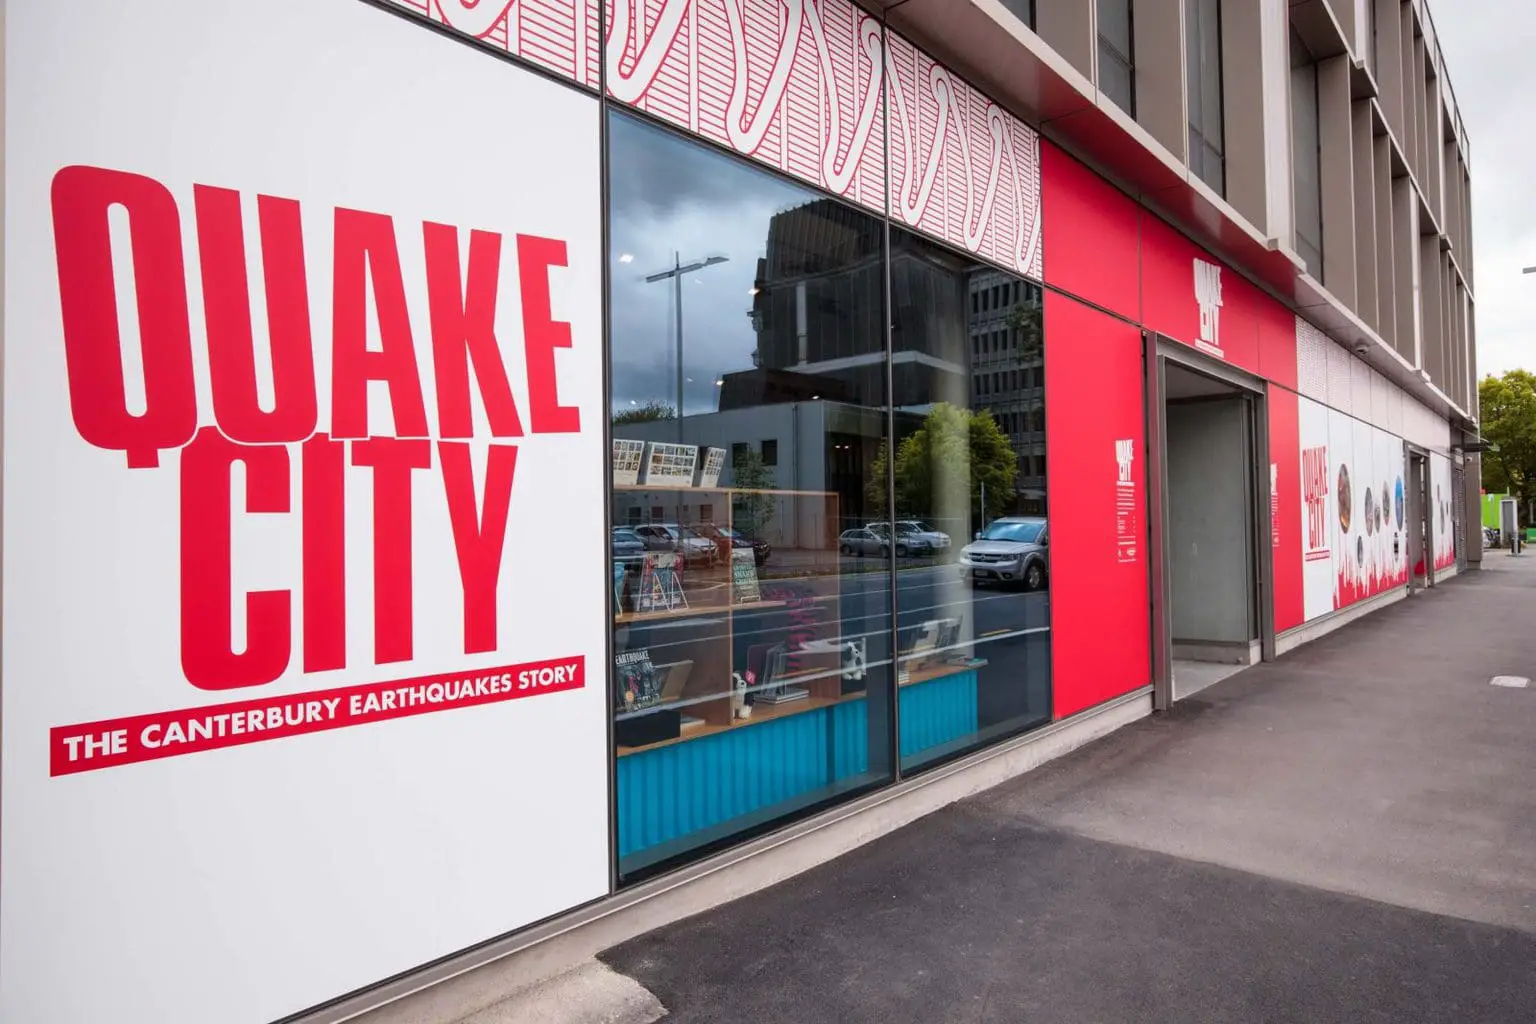 Quake City Museum